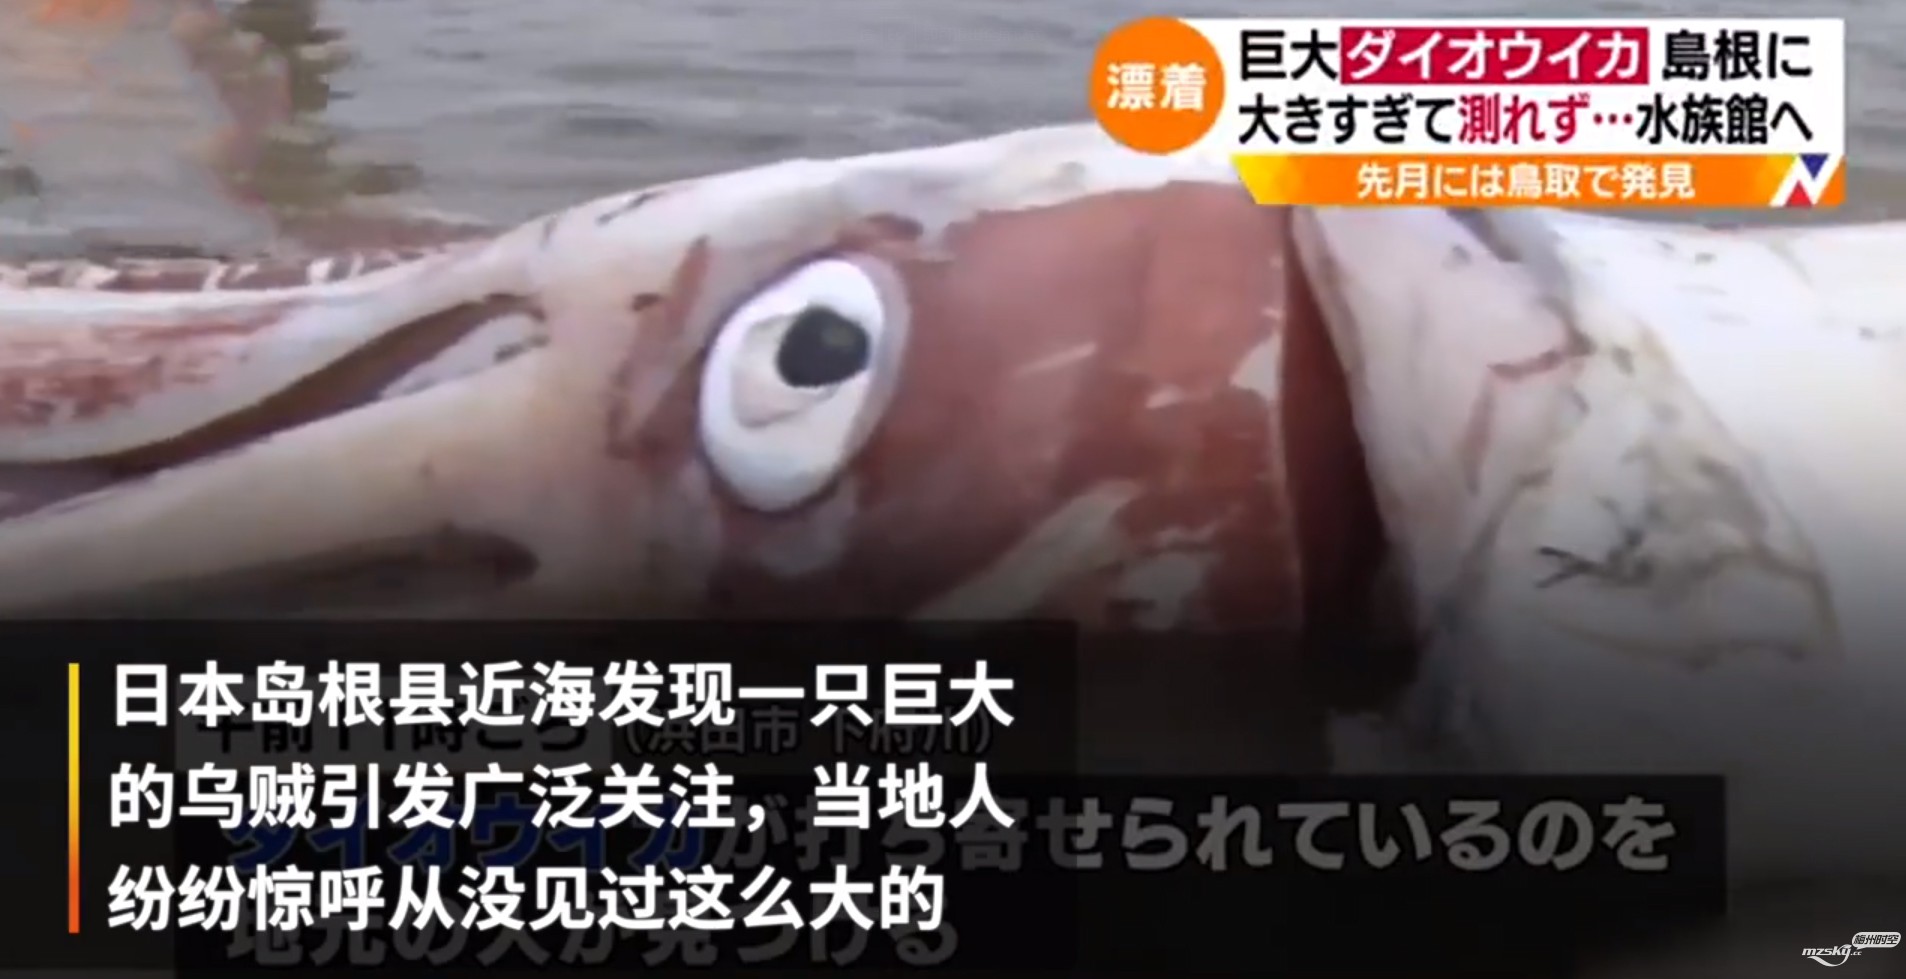   日本近海现3.4米巨大乌贼